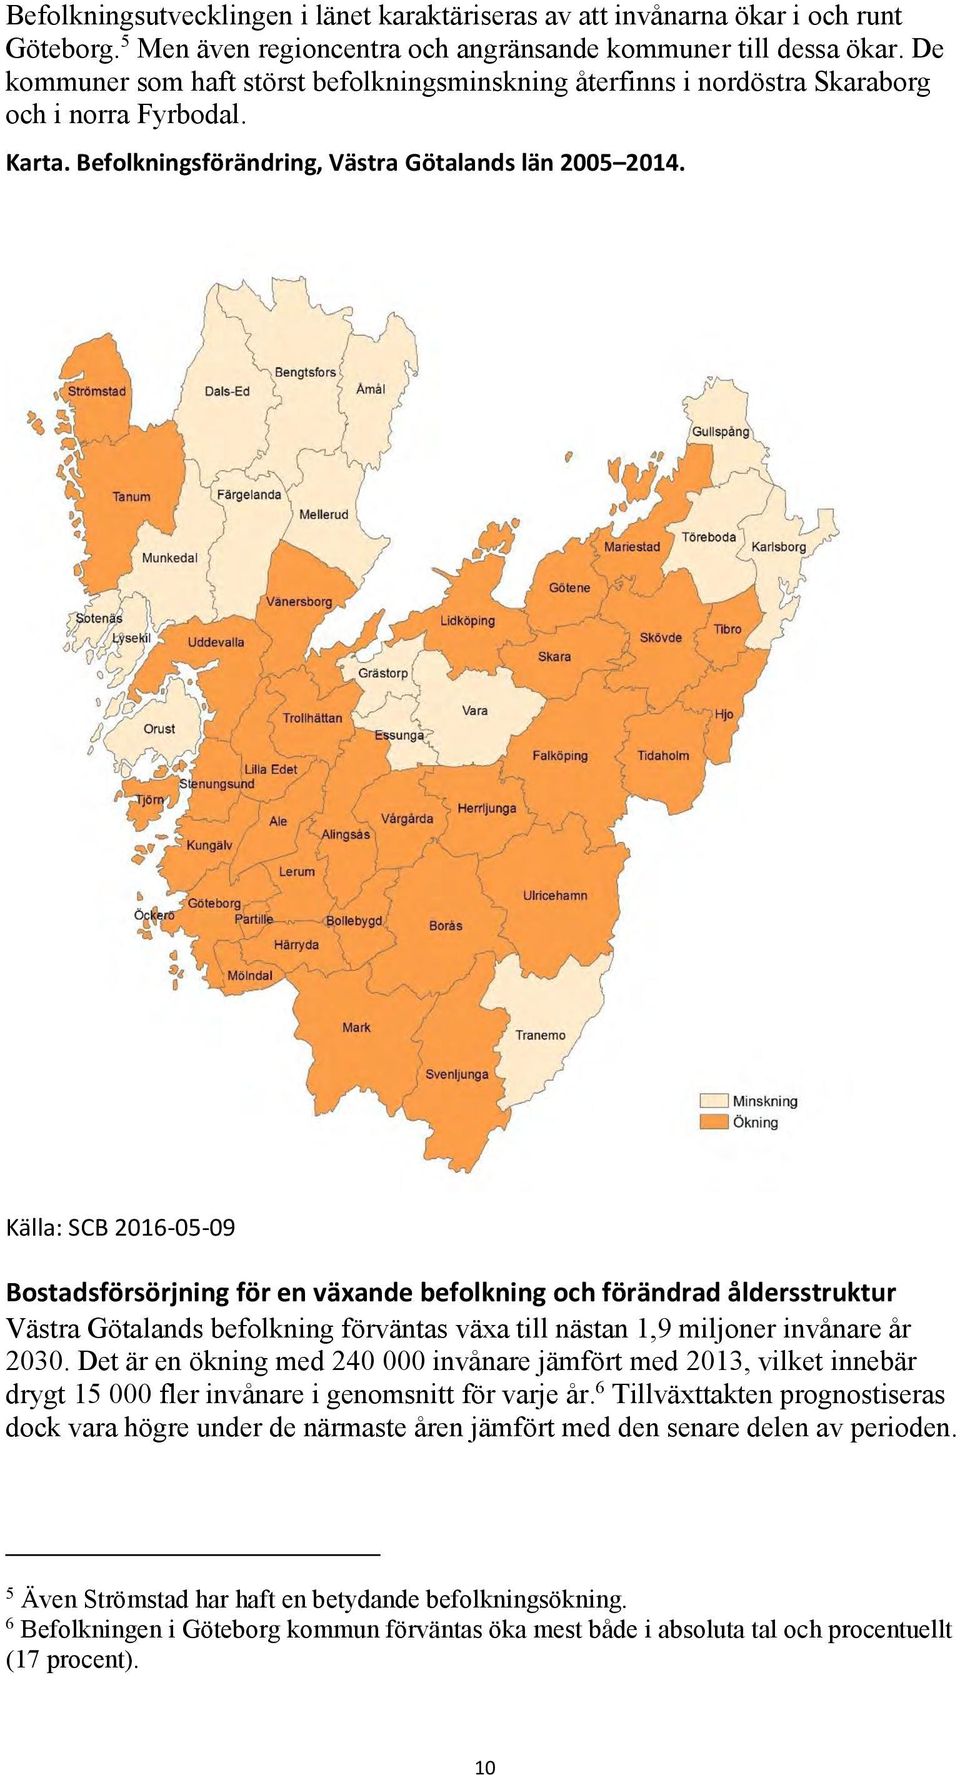 Källa: SCB 2016-05-09 Bostadsförsörjning för en växande befolkning och förändrad åldersstruktur Västra Götalands befolkning förväntas växa till nästan 1,9 miljoner invånare år 2030.